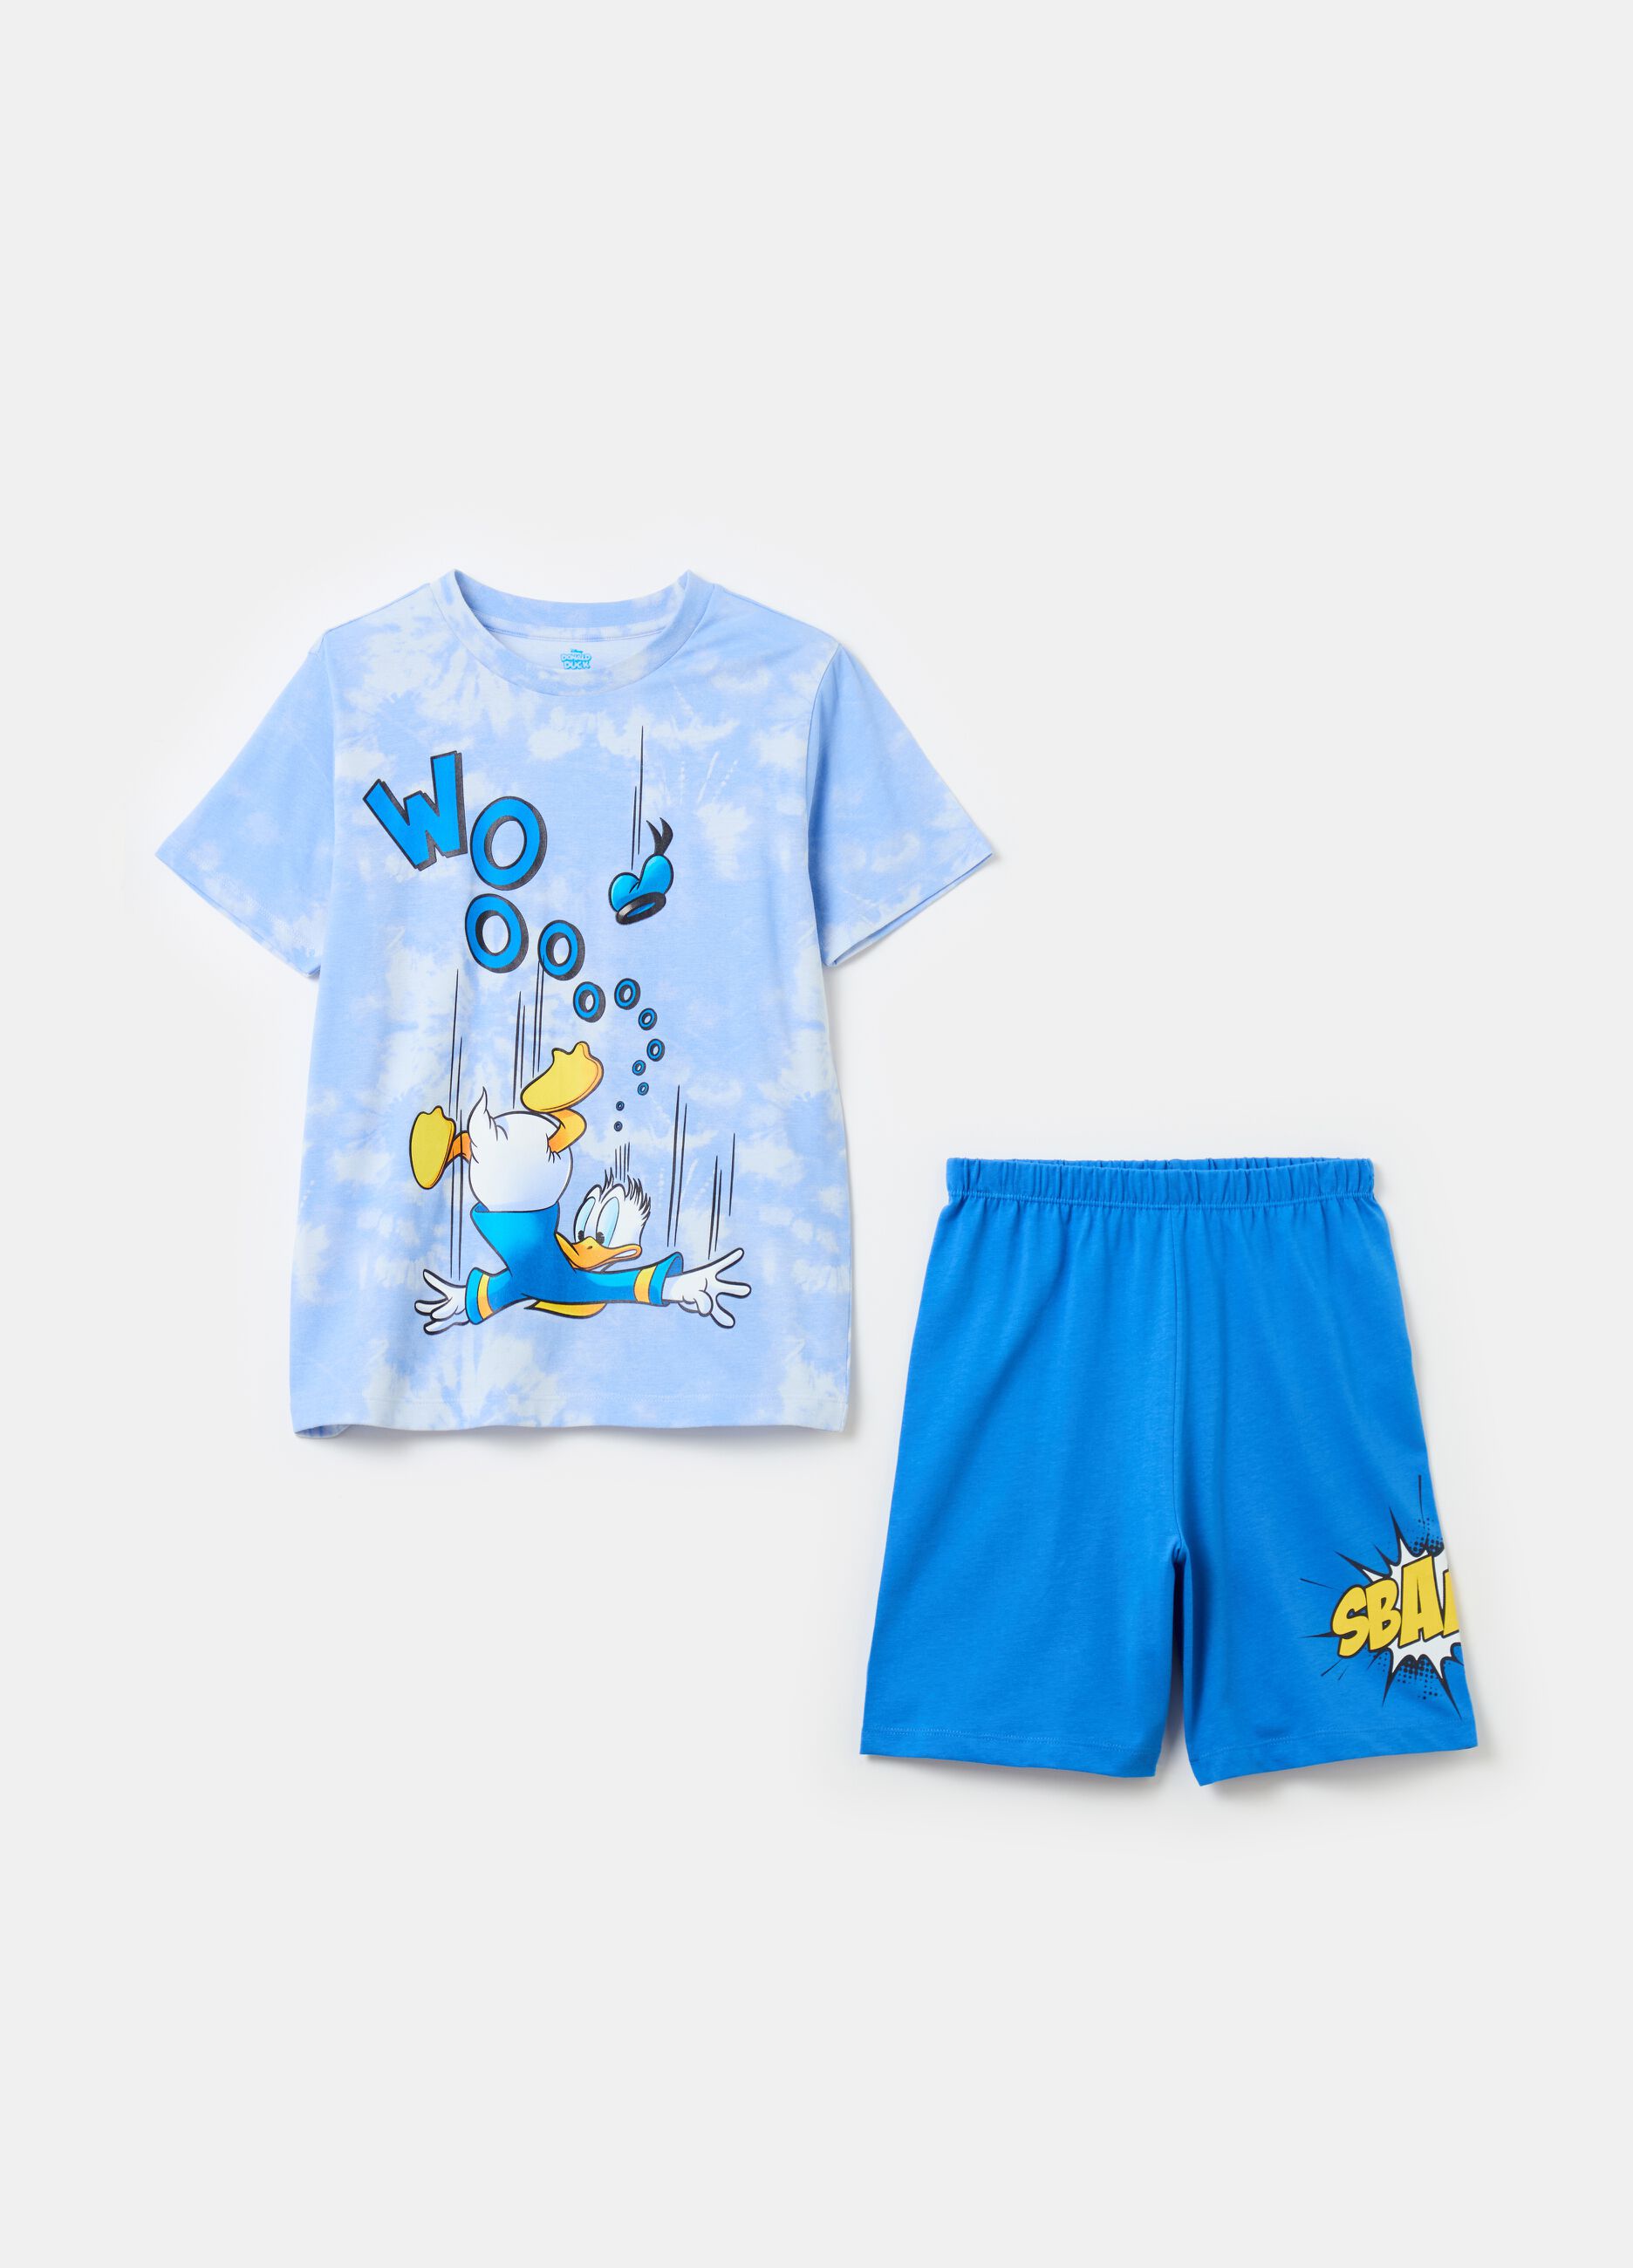 Pyjamas with Donald Duck 90 print